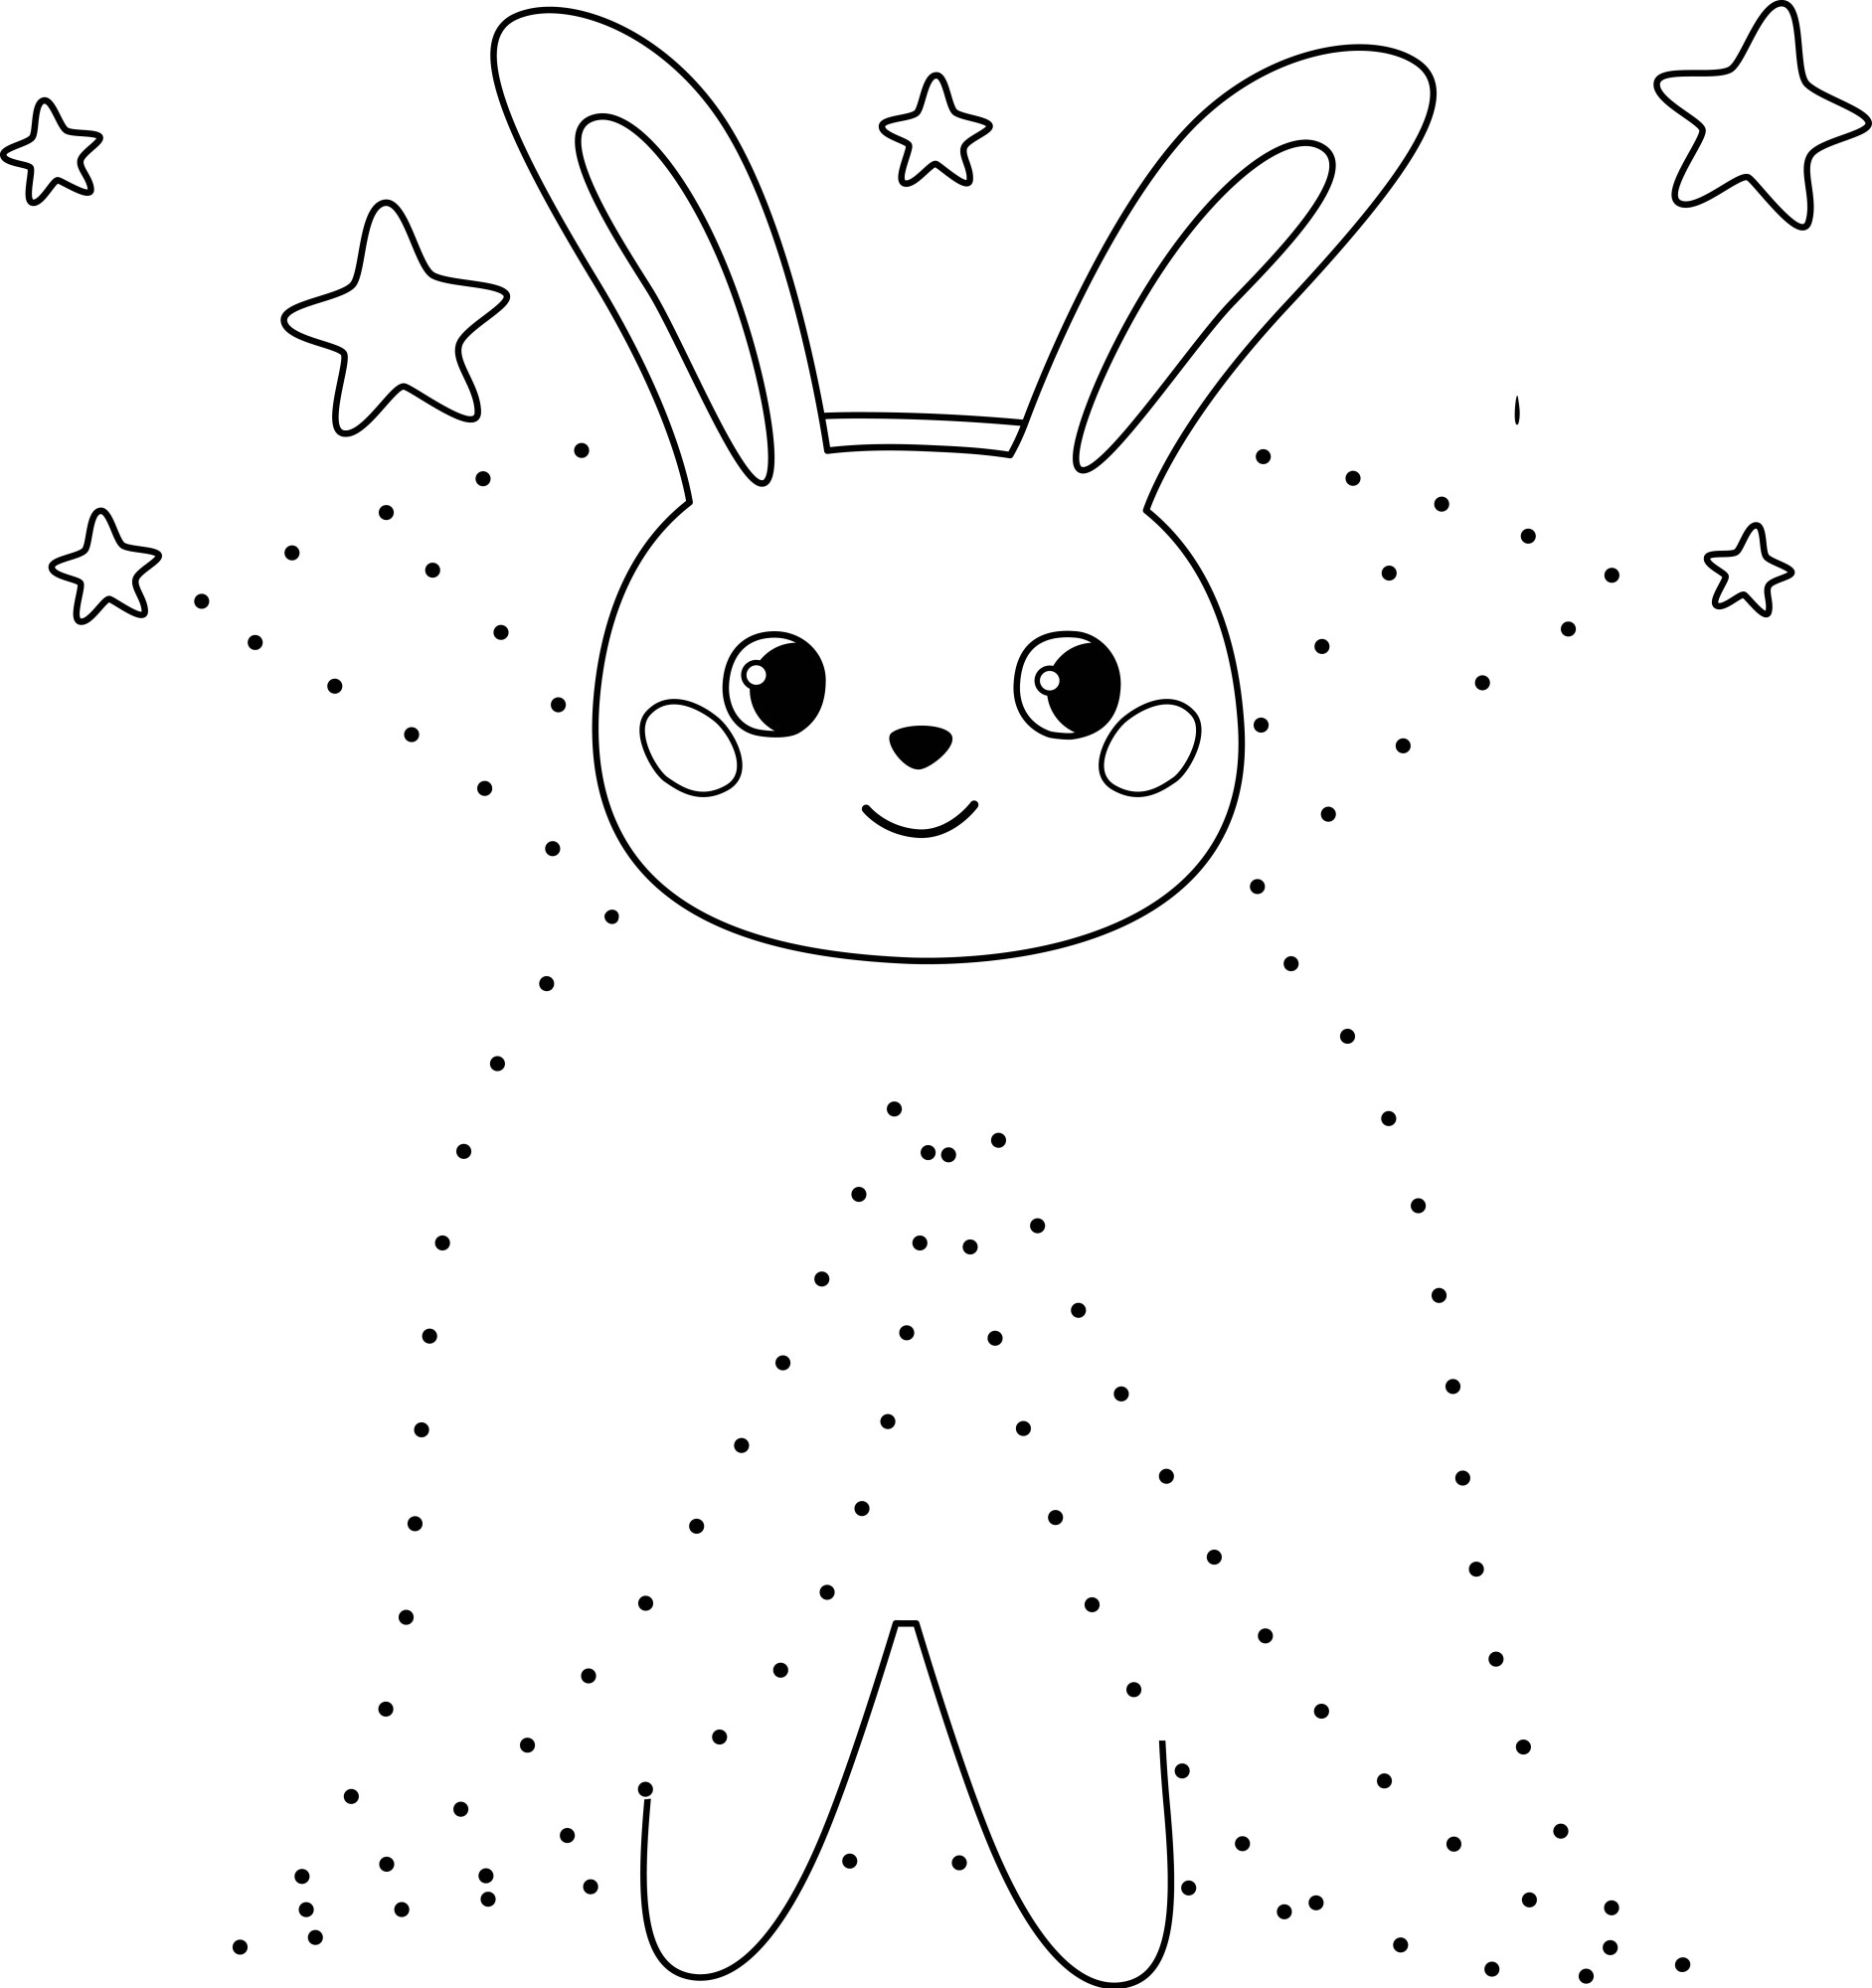 Раскраска для детей: кролик в костюме вампира по точкам